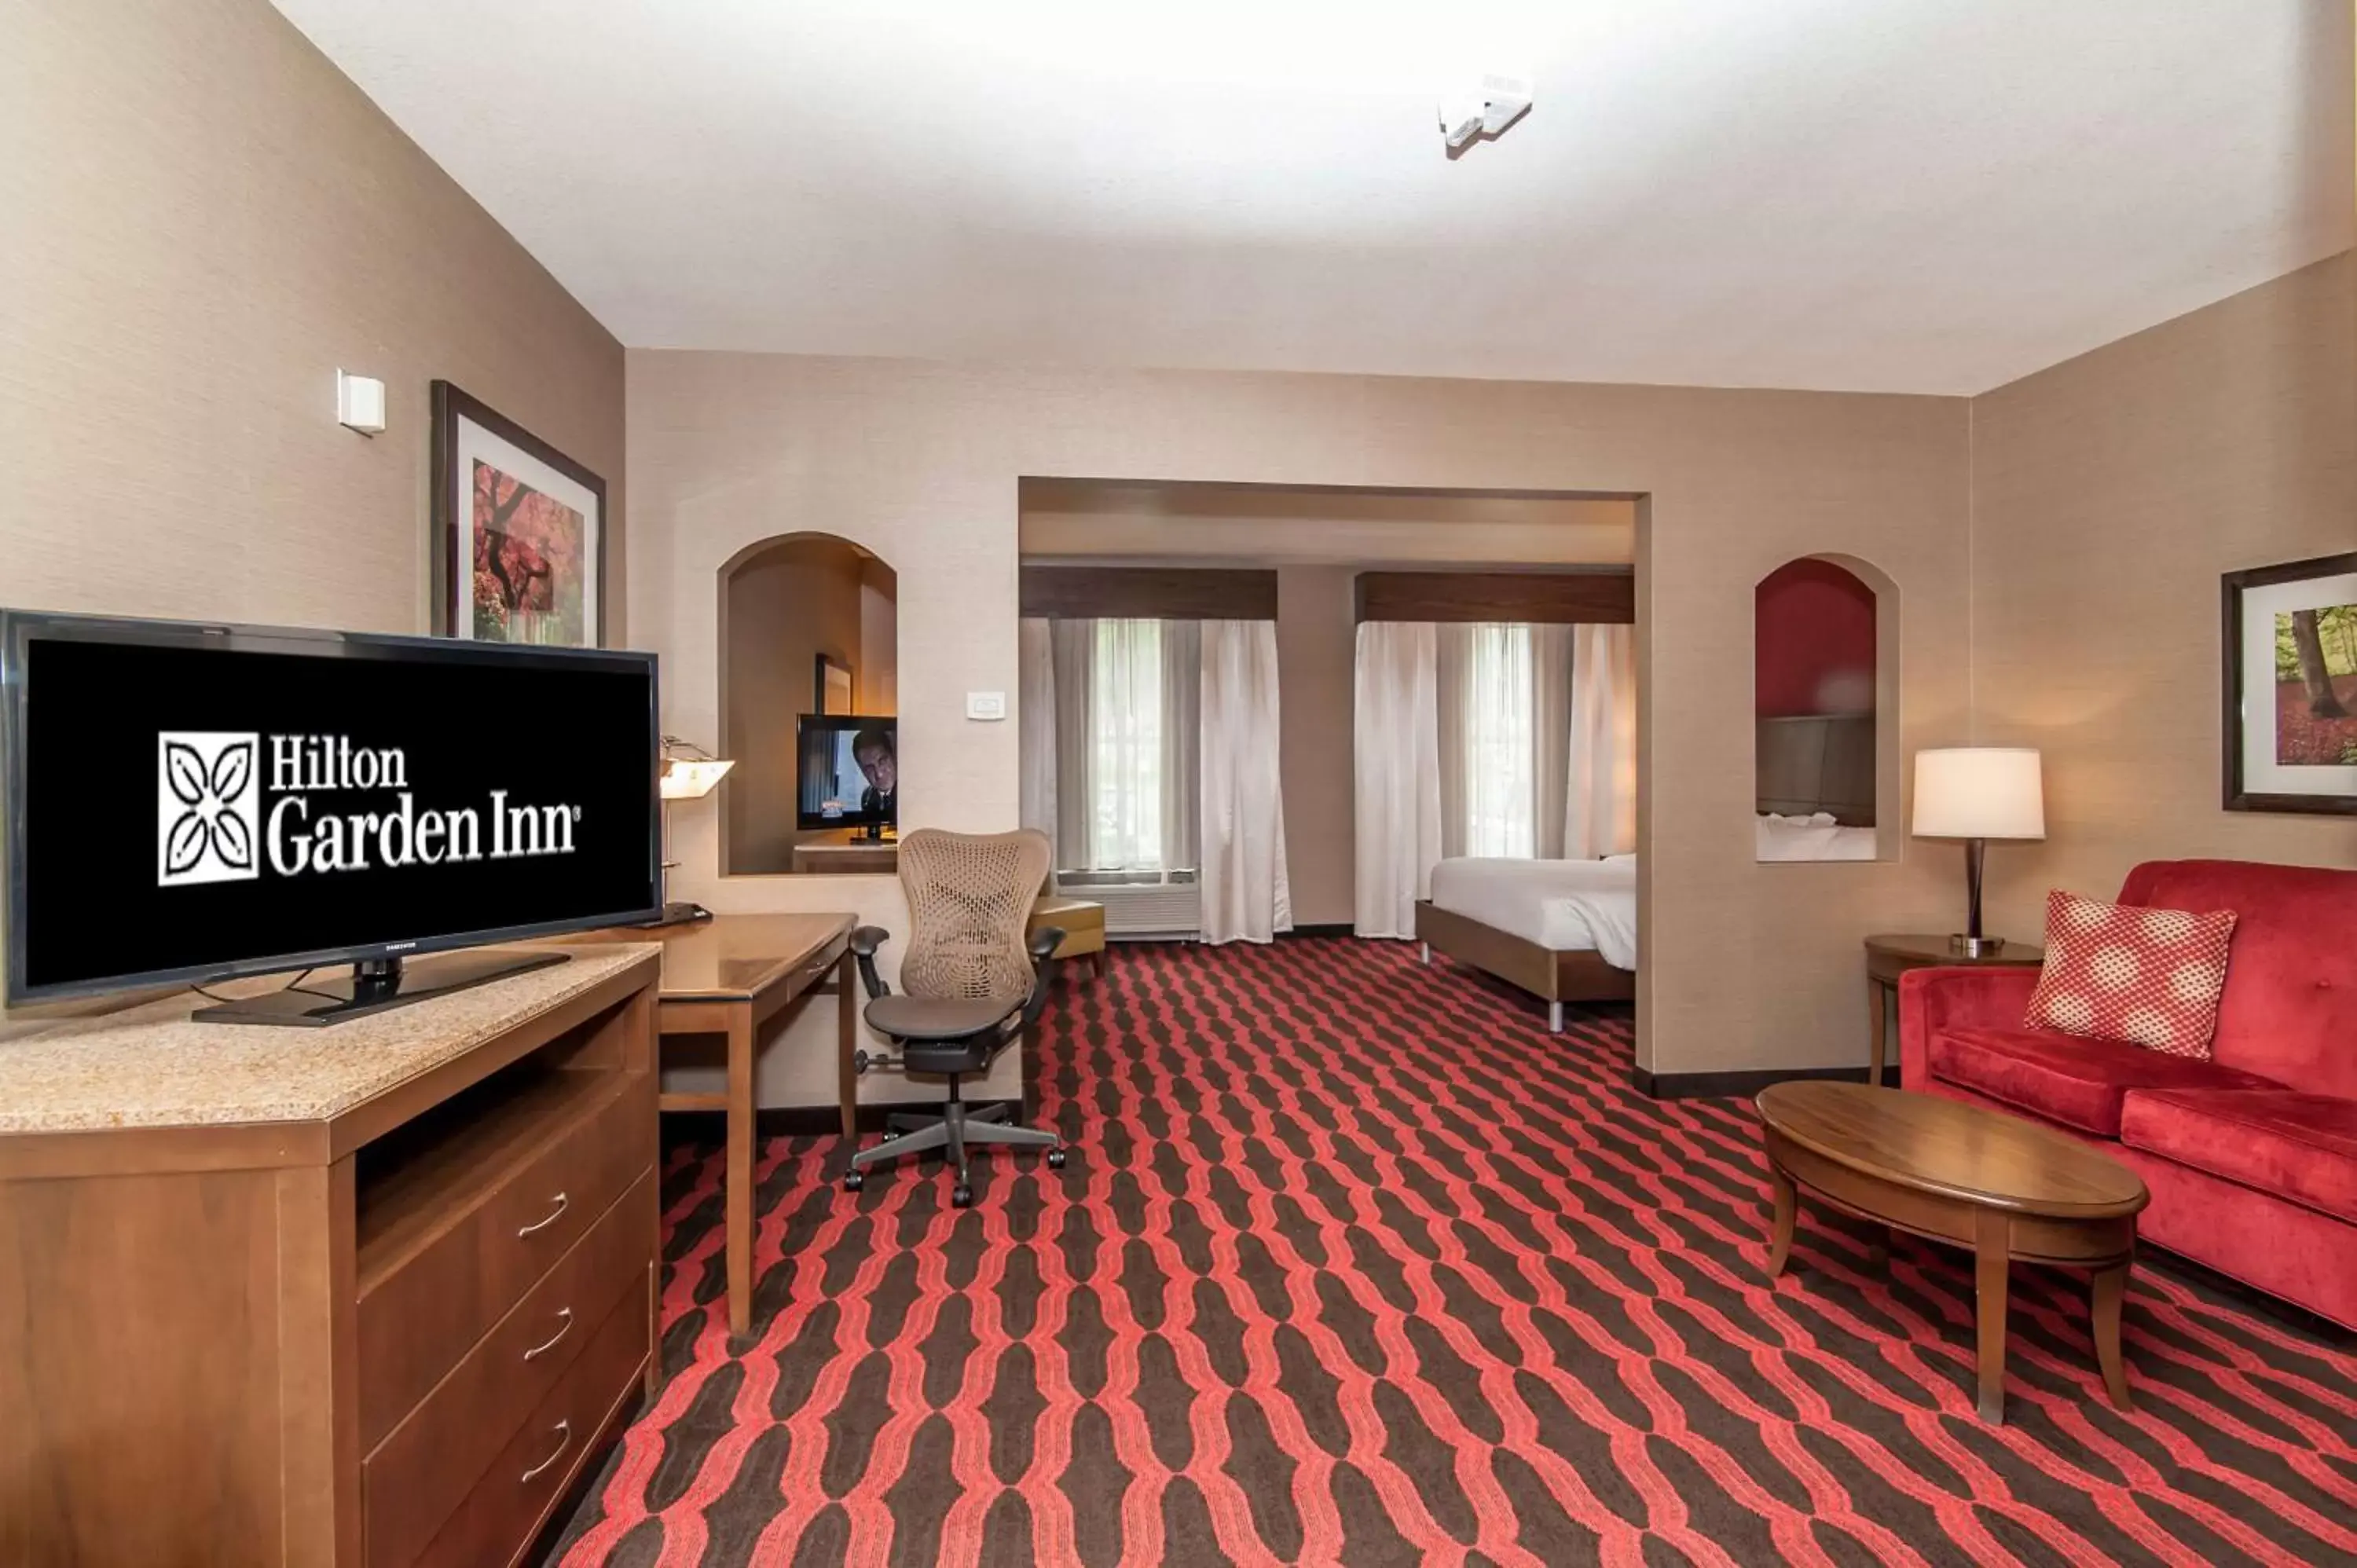 Bedroom, TV/Entertainment Center in Hilton Garden Inn Closest Foxwoods